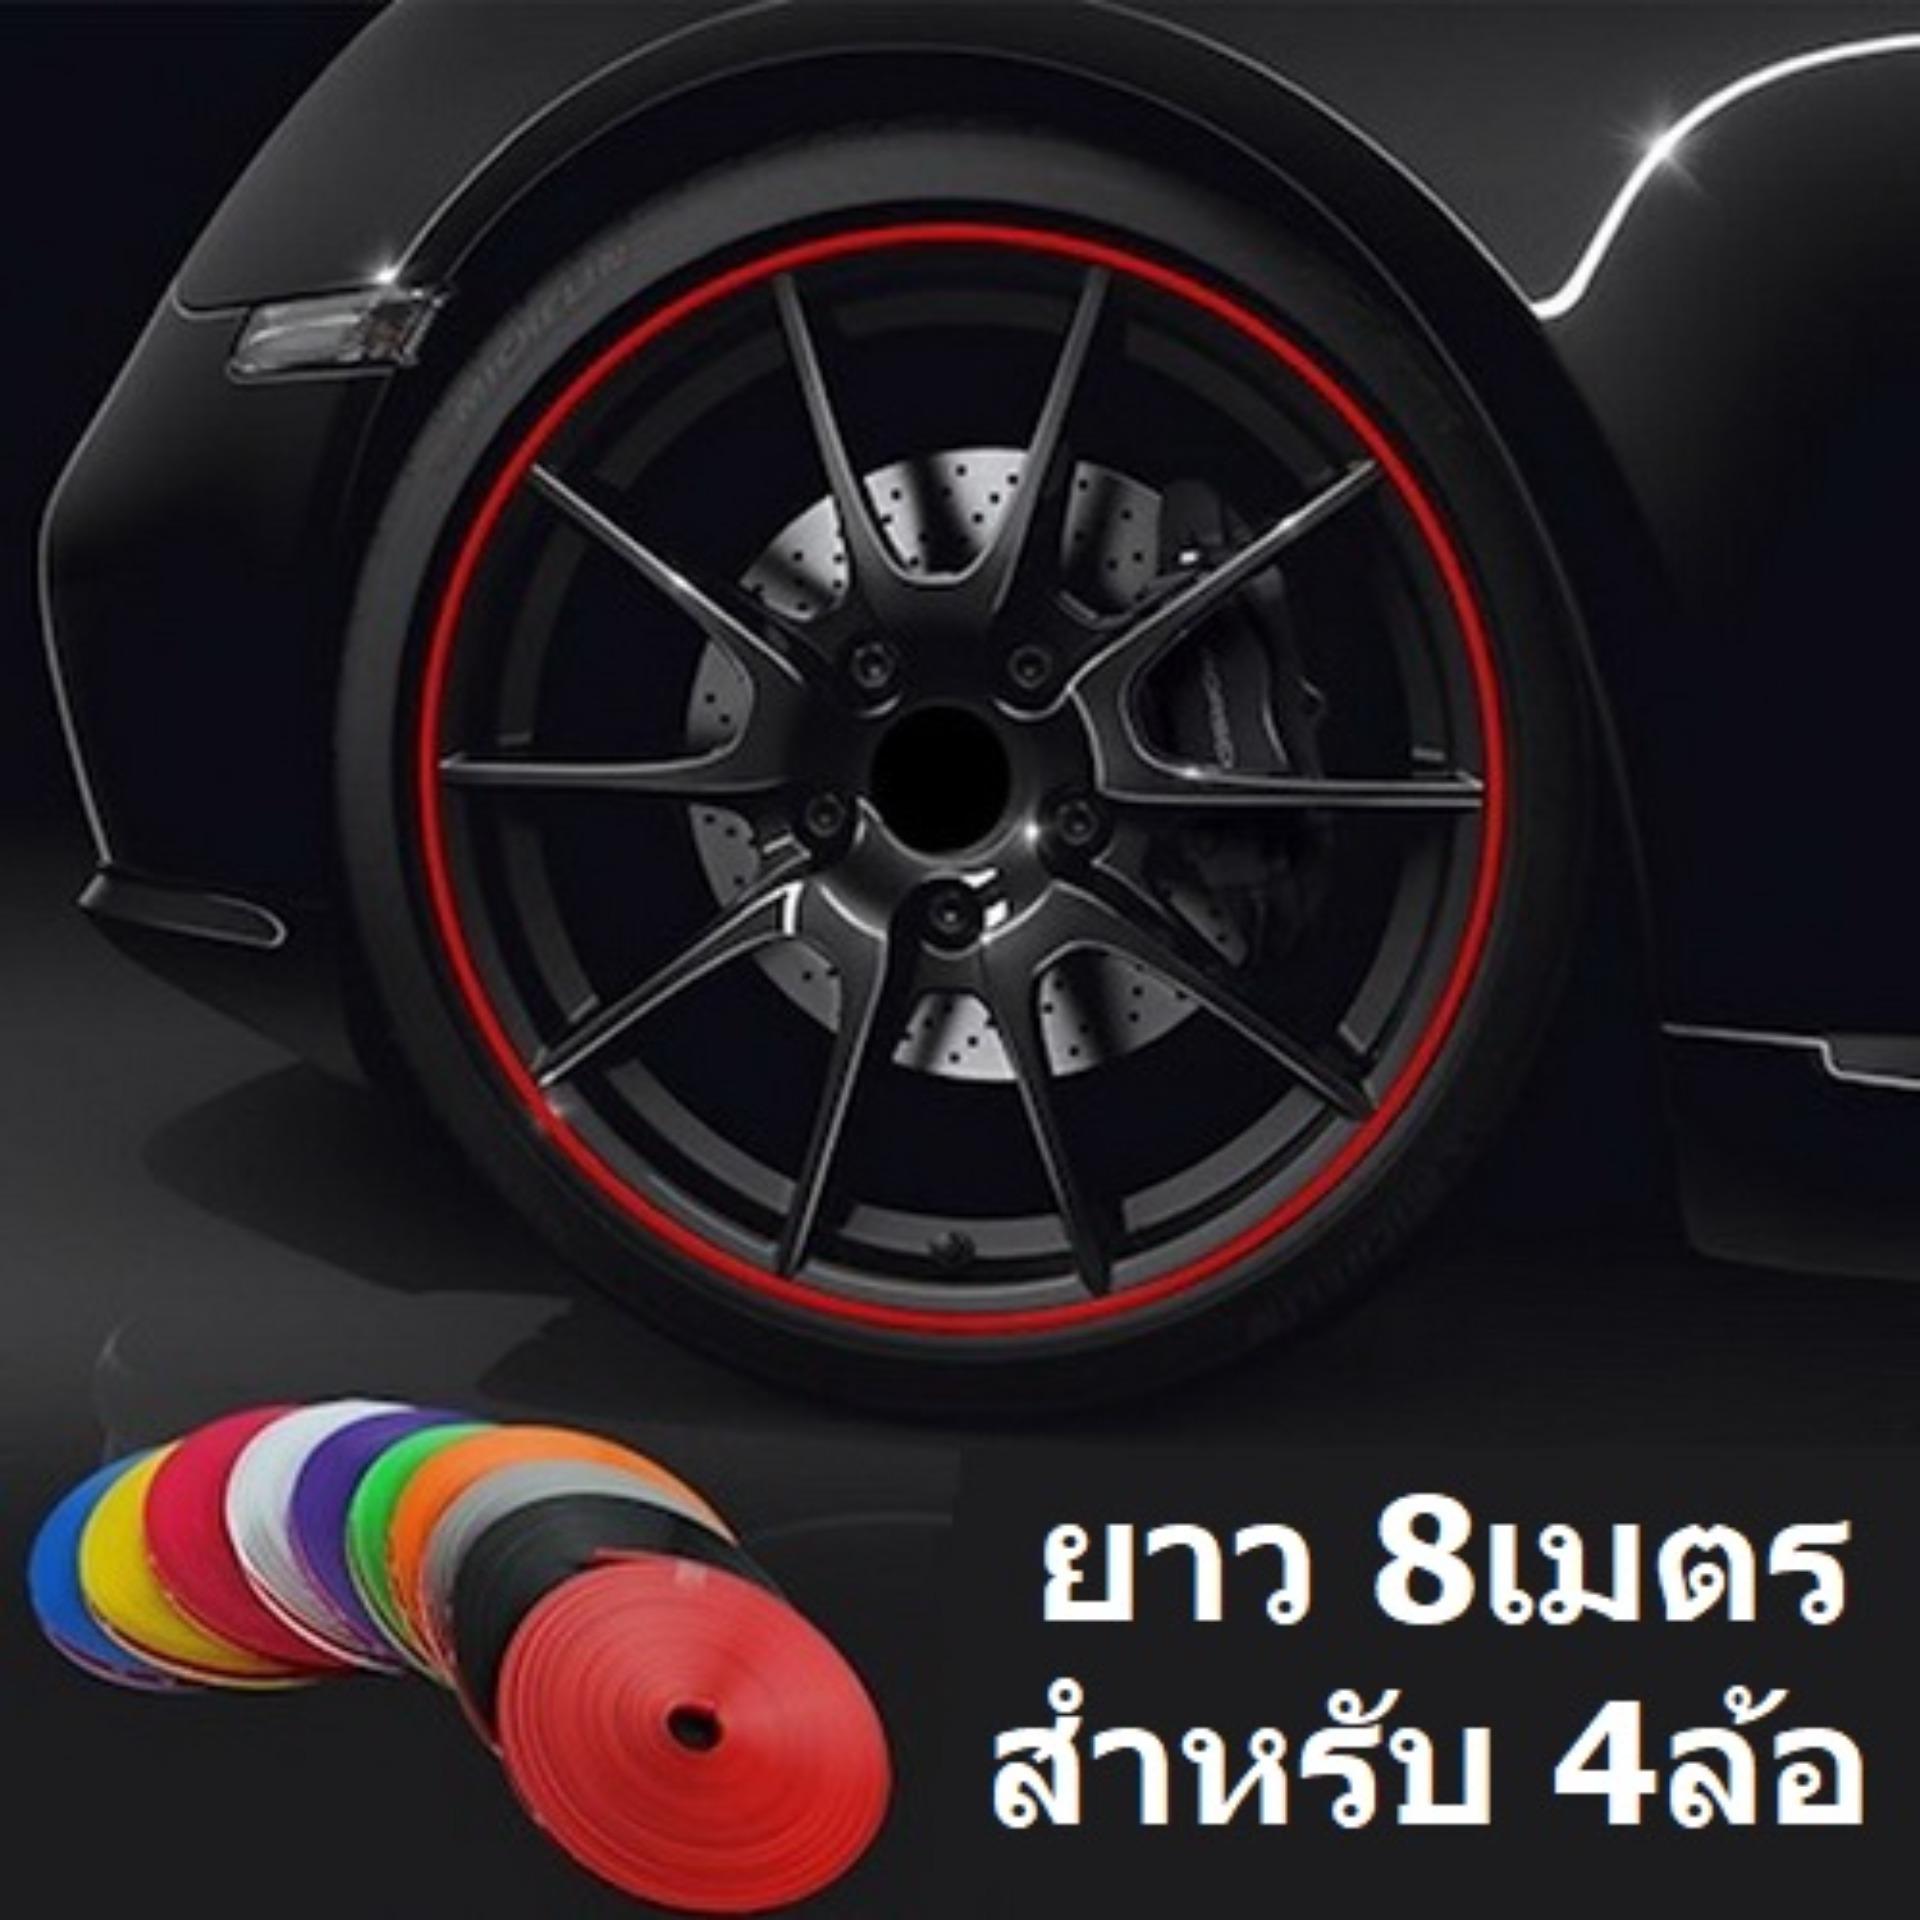 (8เมตร สำหรับ4ล้อ) ยางกันขอบล้อแม็ก เส้นแต่งขอบล้อ ยางแต่งกันรอยล้อแม็กซ์ สีแดง สีฟ้า สีดำ ม่วง ชมพู เขียว เหลือง เลือกสีได้ Car Vehicle Wheel Rim Protector Tire Guard Line Rubber Moulding 8 Meters